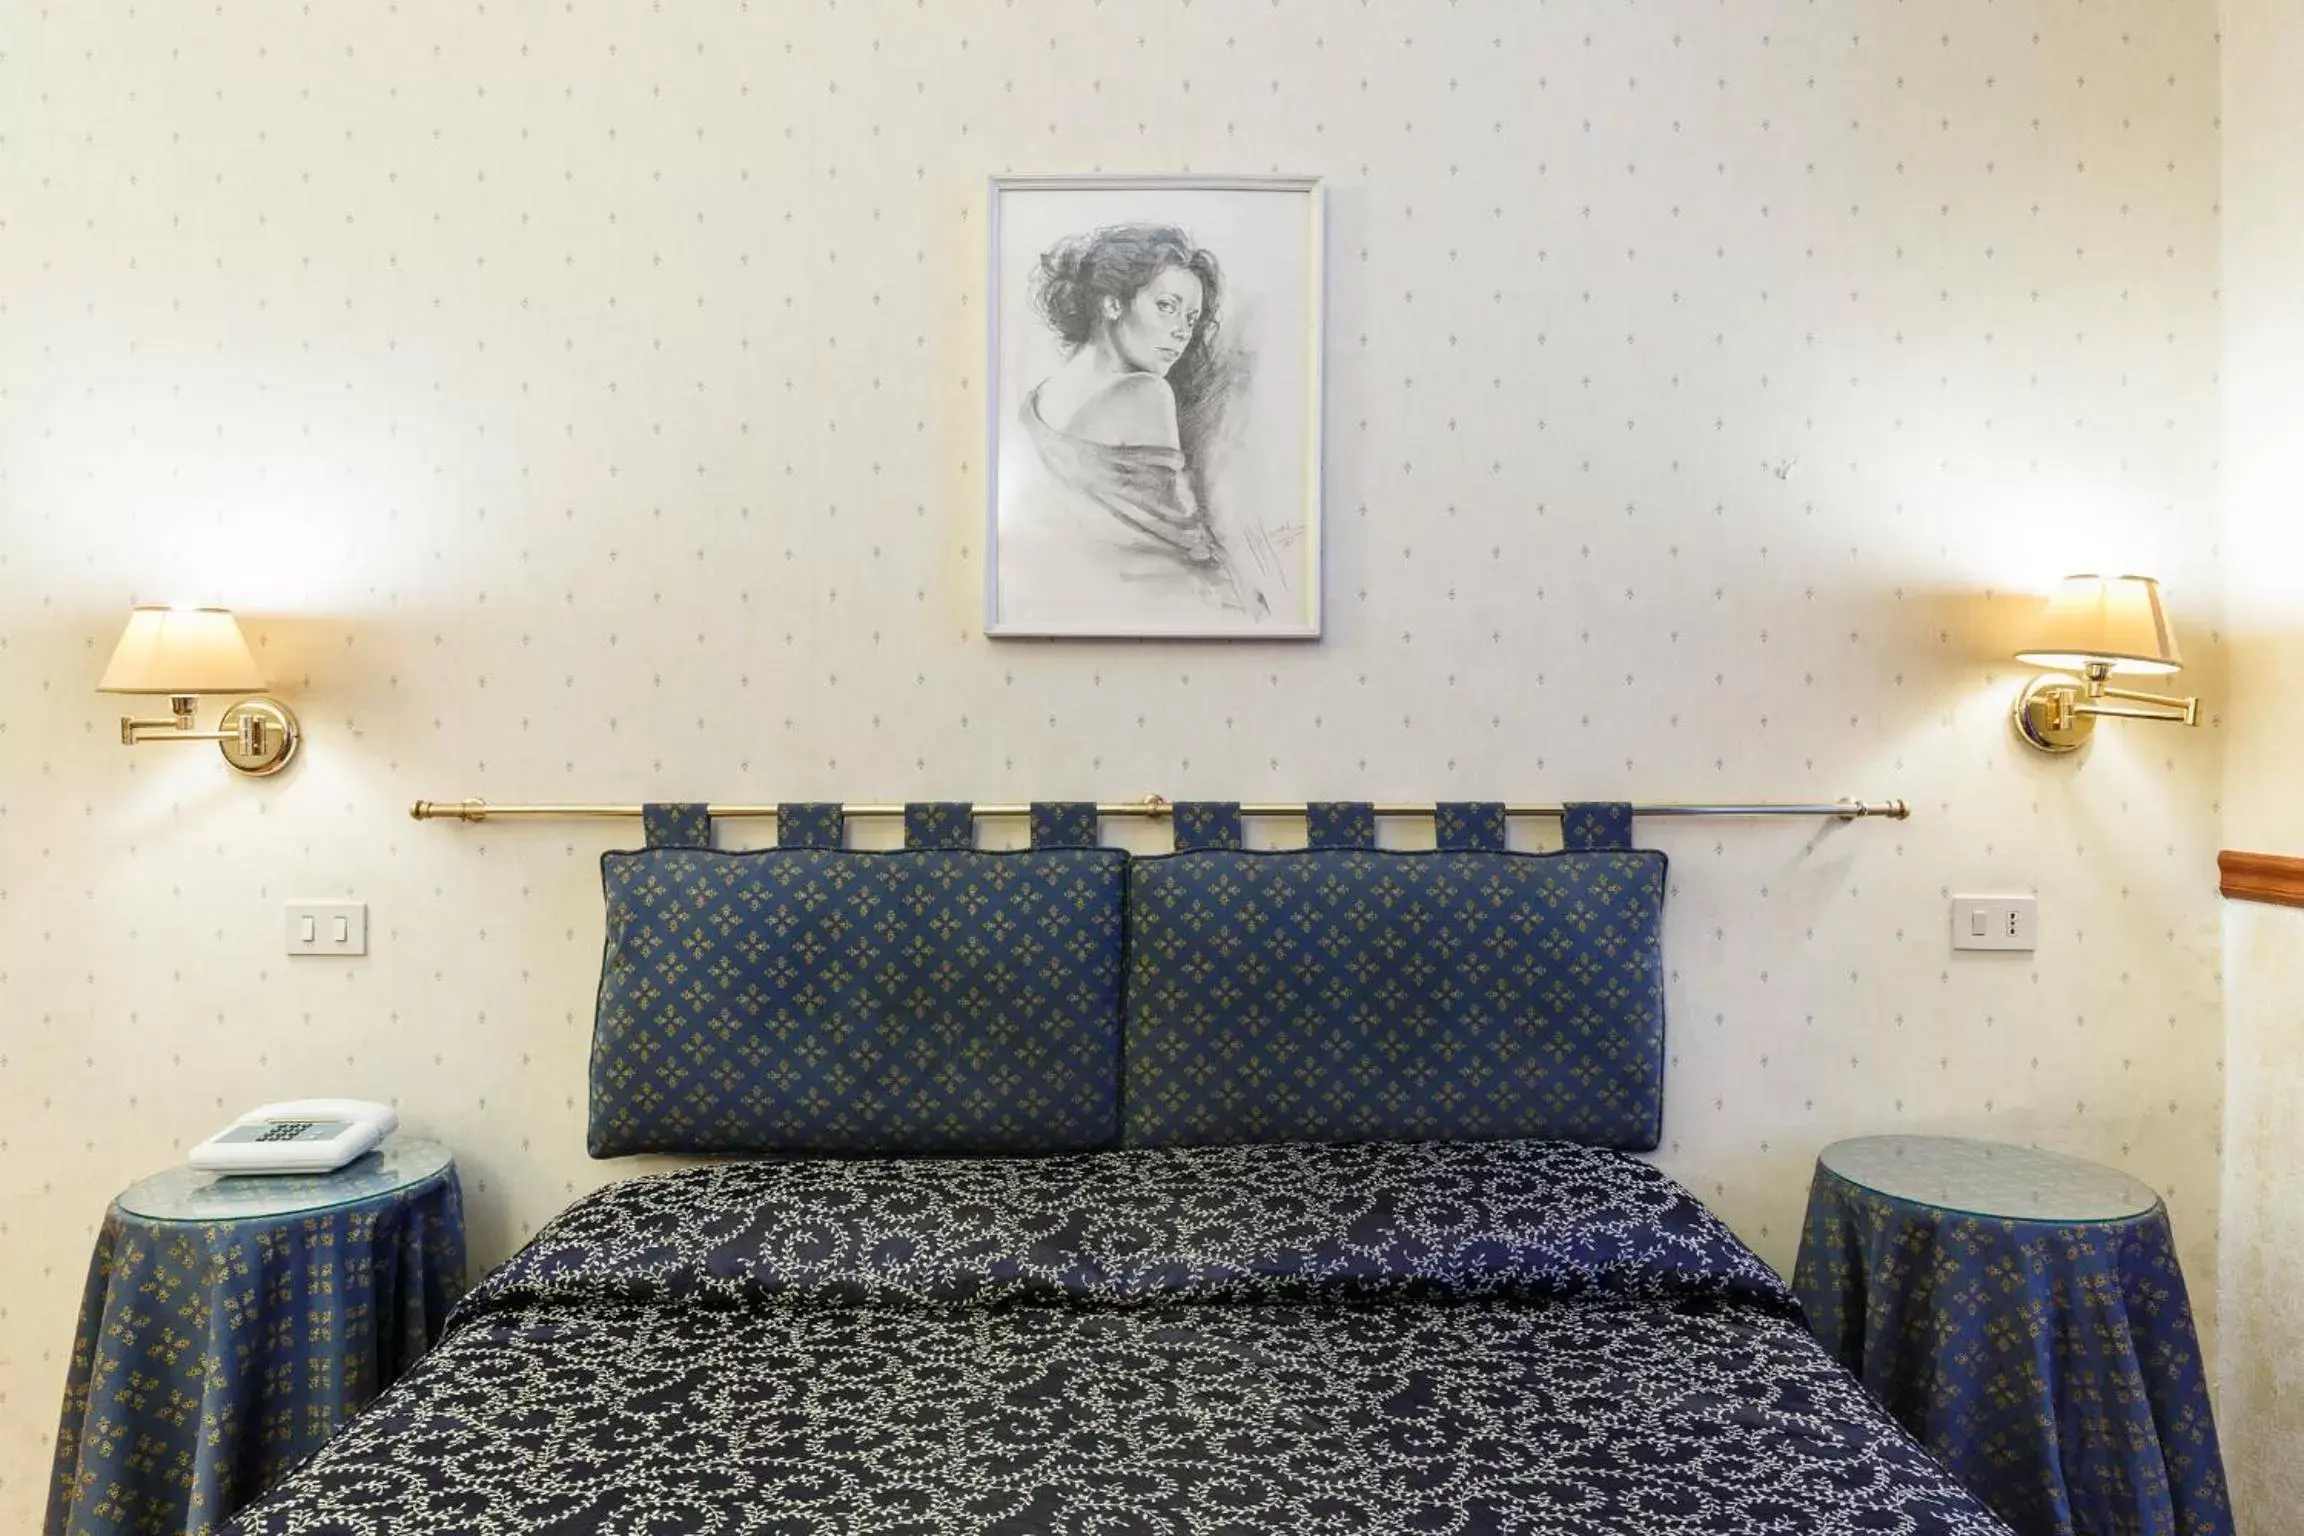 Bedroom, Room Photo in Hotel Paris